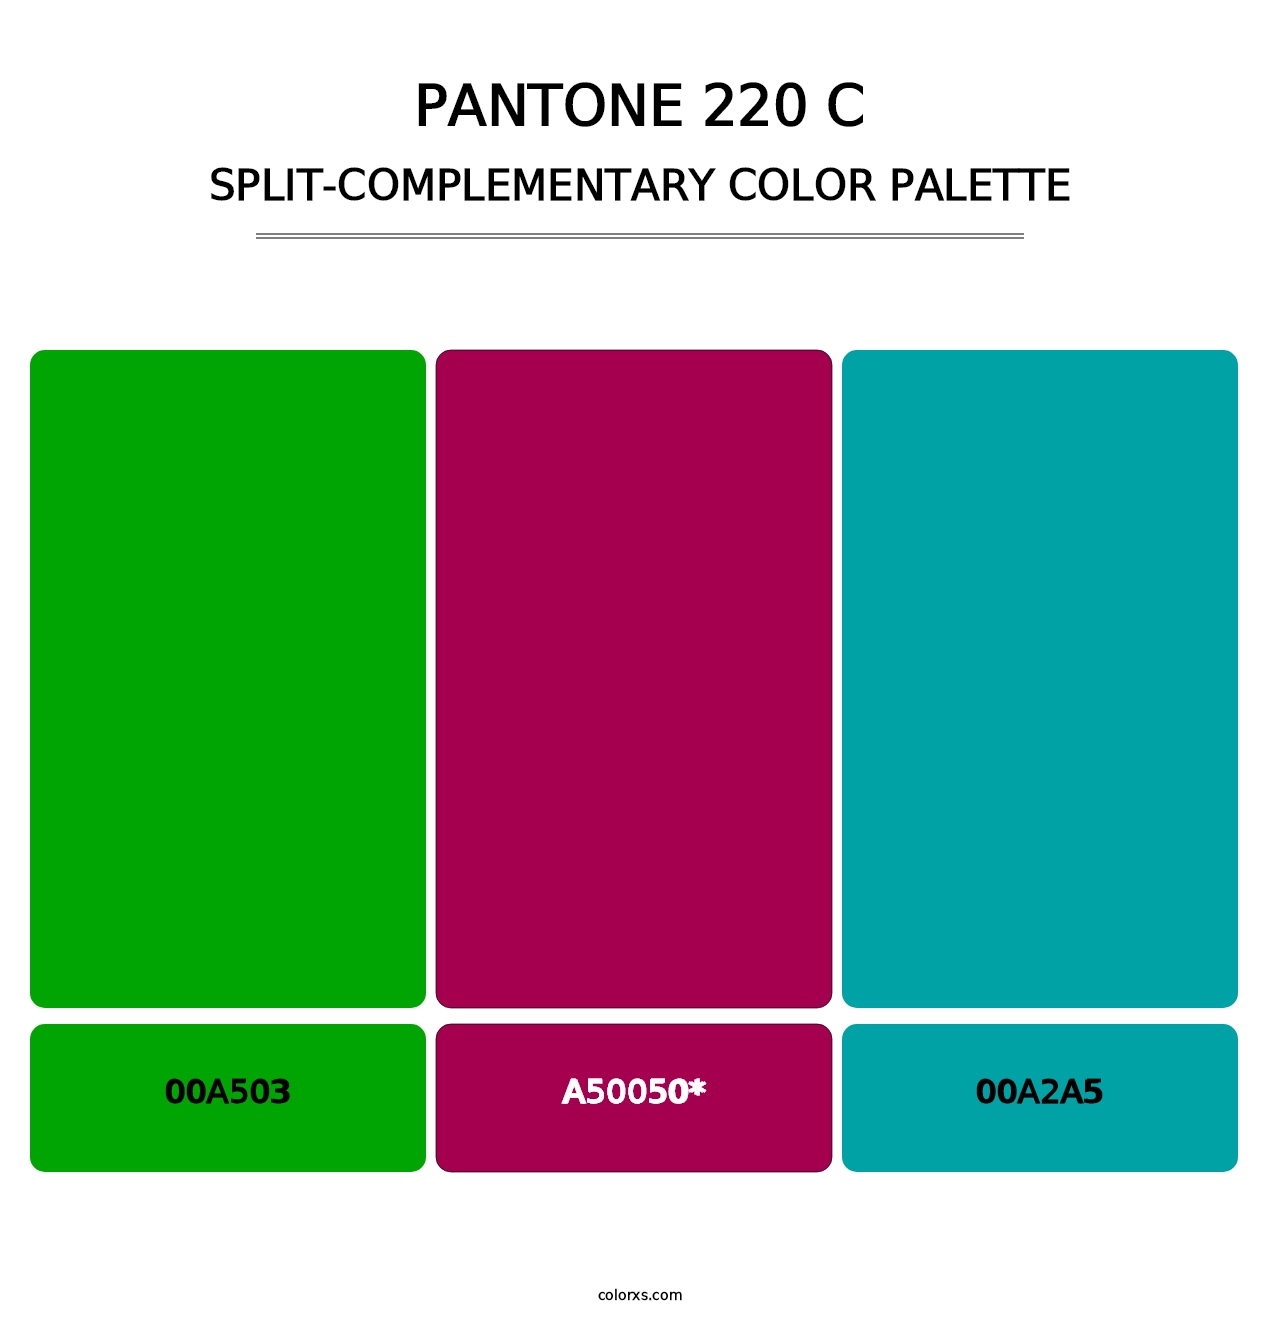 PANTONE 220 C - Split-Complementary Color Palette